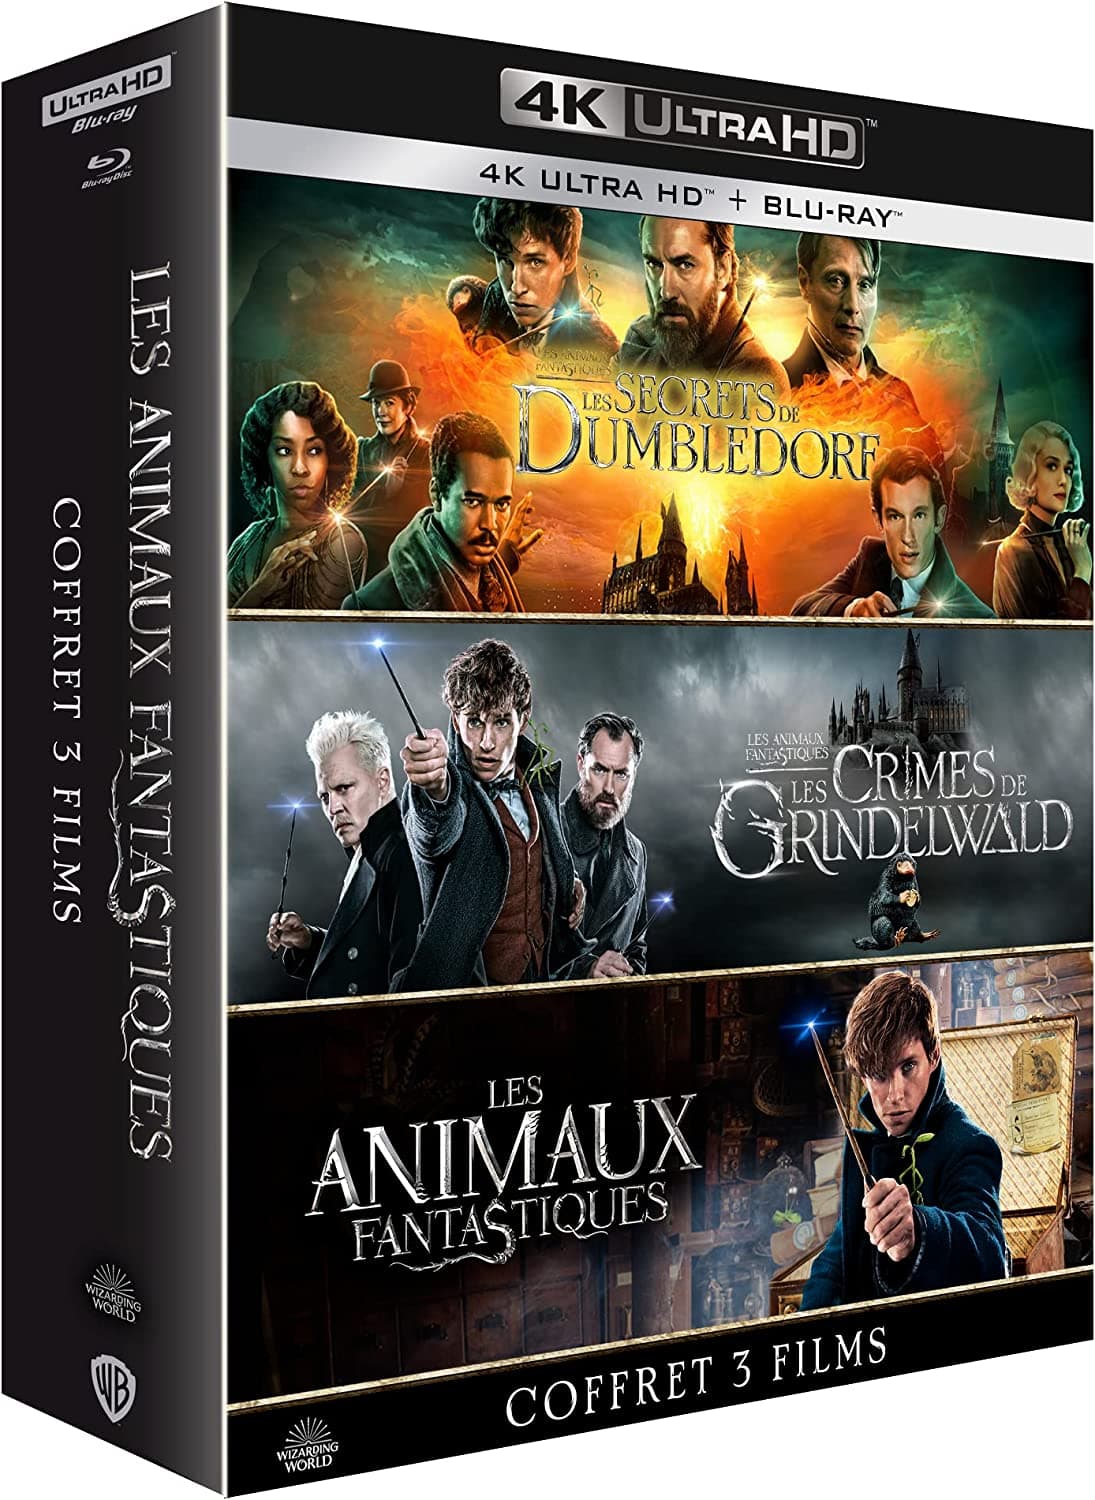 Wizarding World : Harry Potter et Les Animaux Fantastiques dans un seul  coffret… et en 4K Ultra HD ! - Actus Ciné - AlloCiné